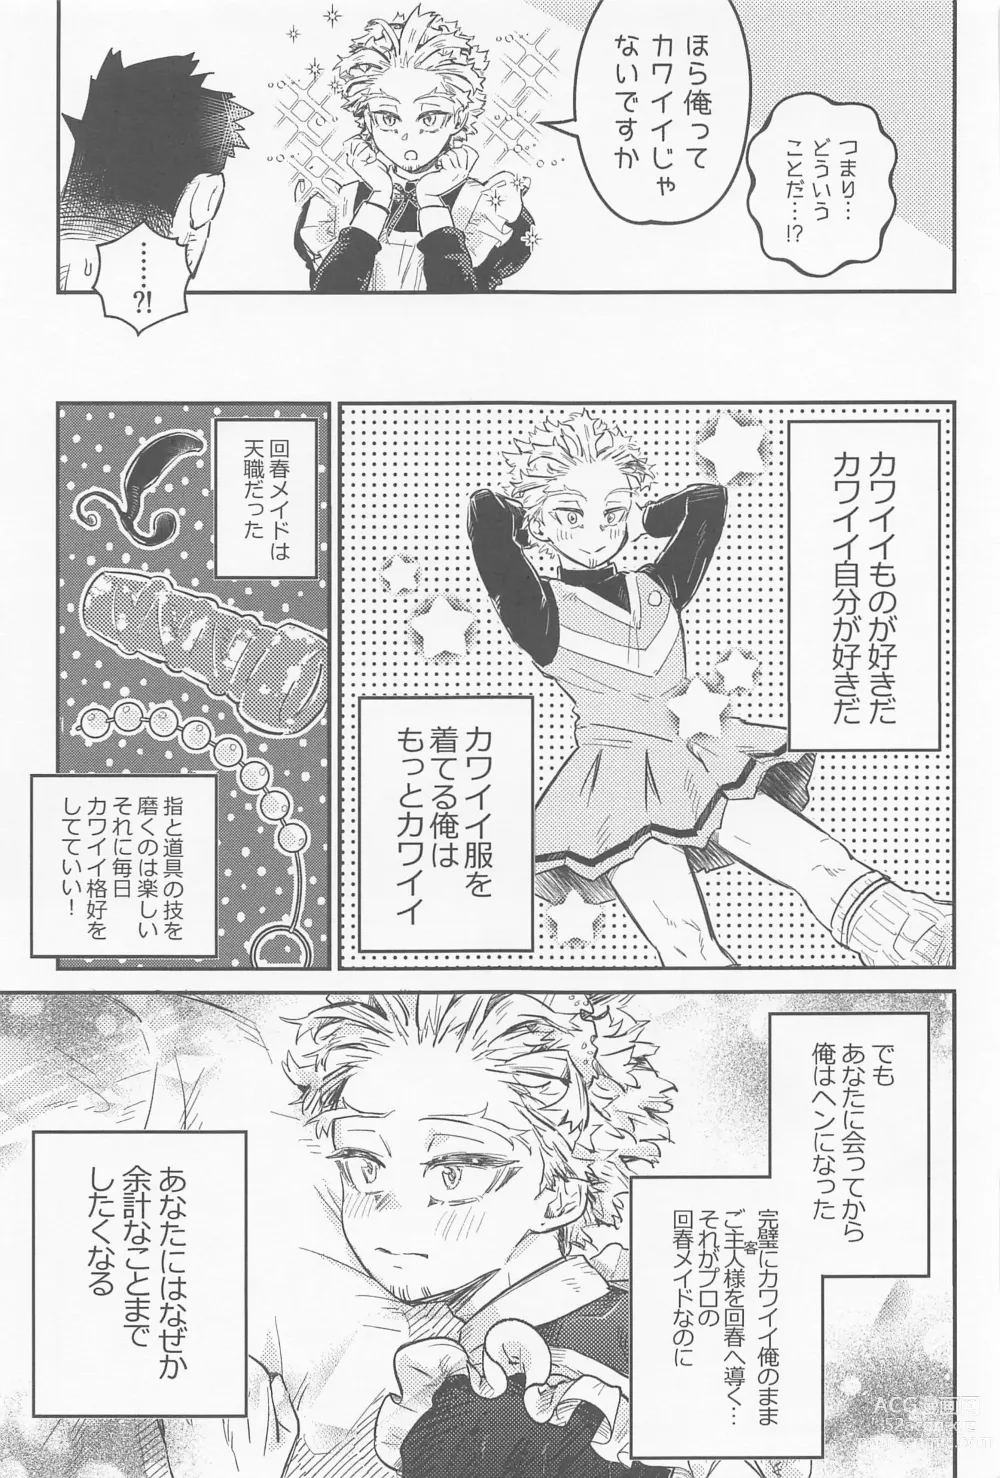 Page 22 of doujinshi Kaishun Maid wa Midarenai